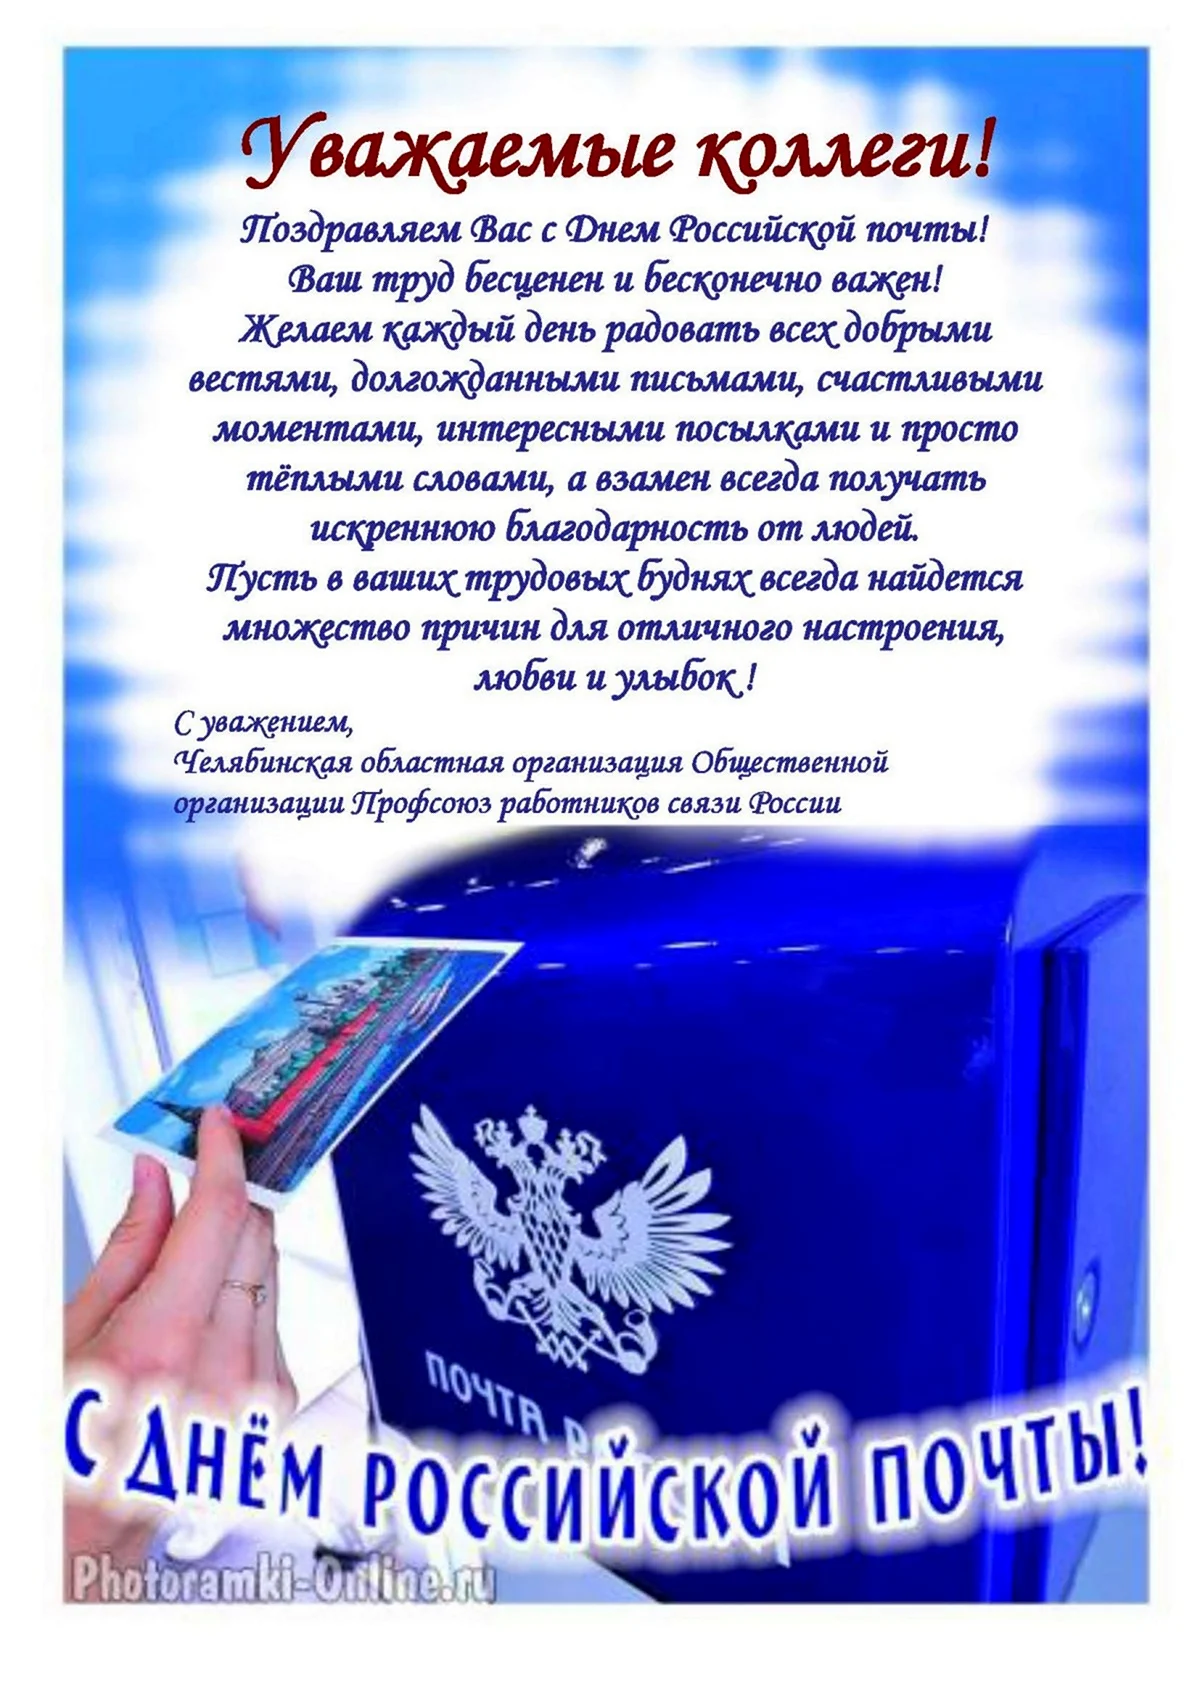 Поздравление с днем Российской почты